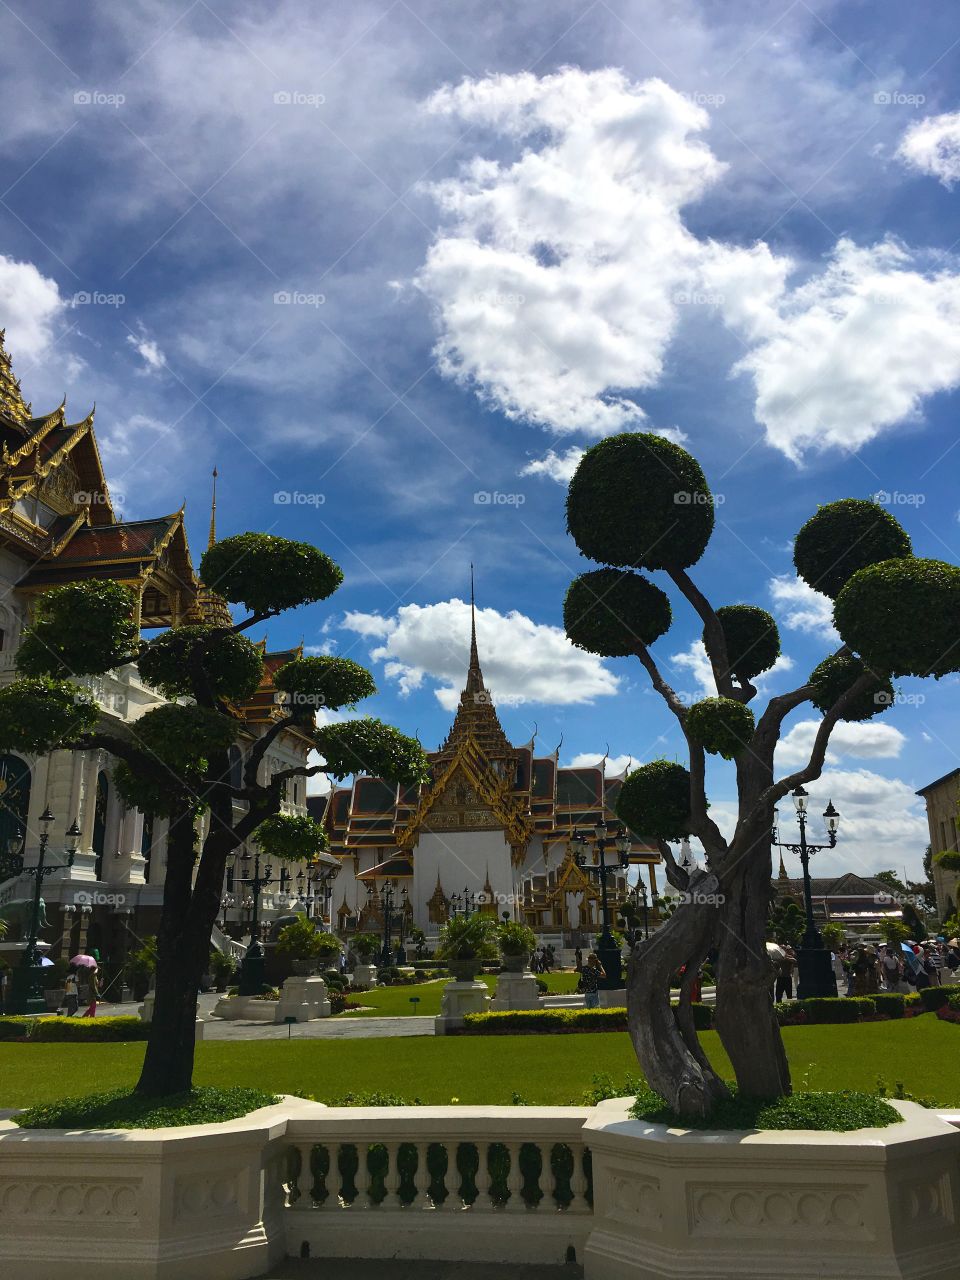 Grand Palace / Bangkok Thailand 83